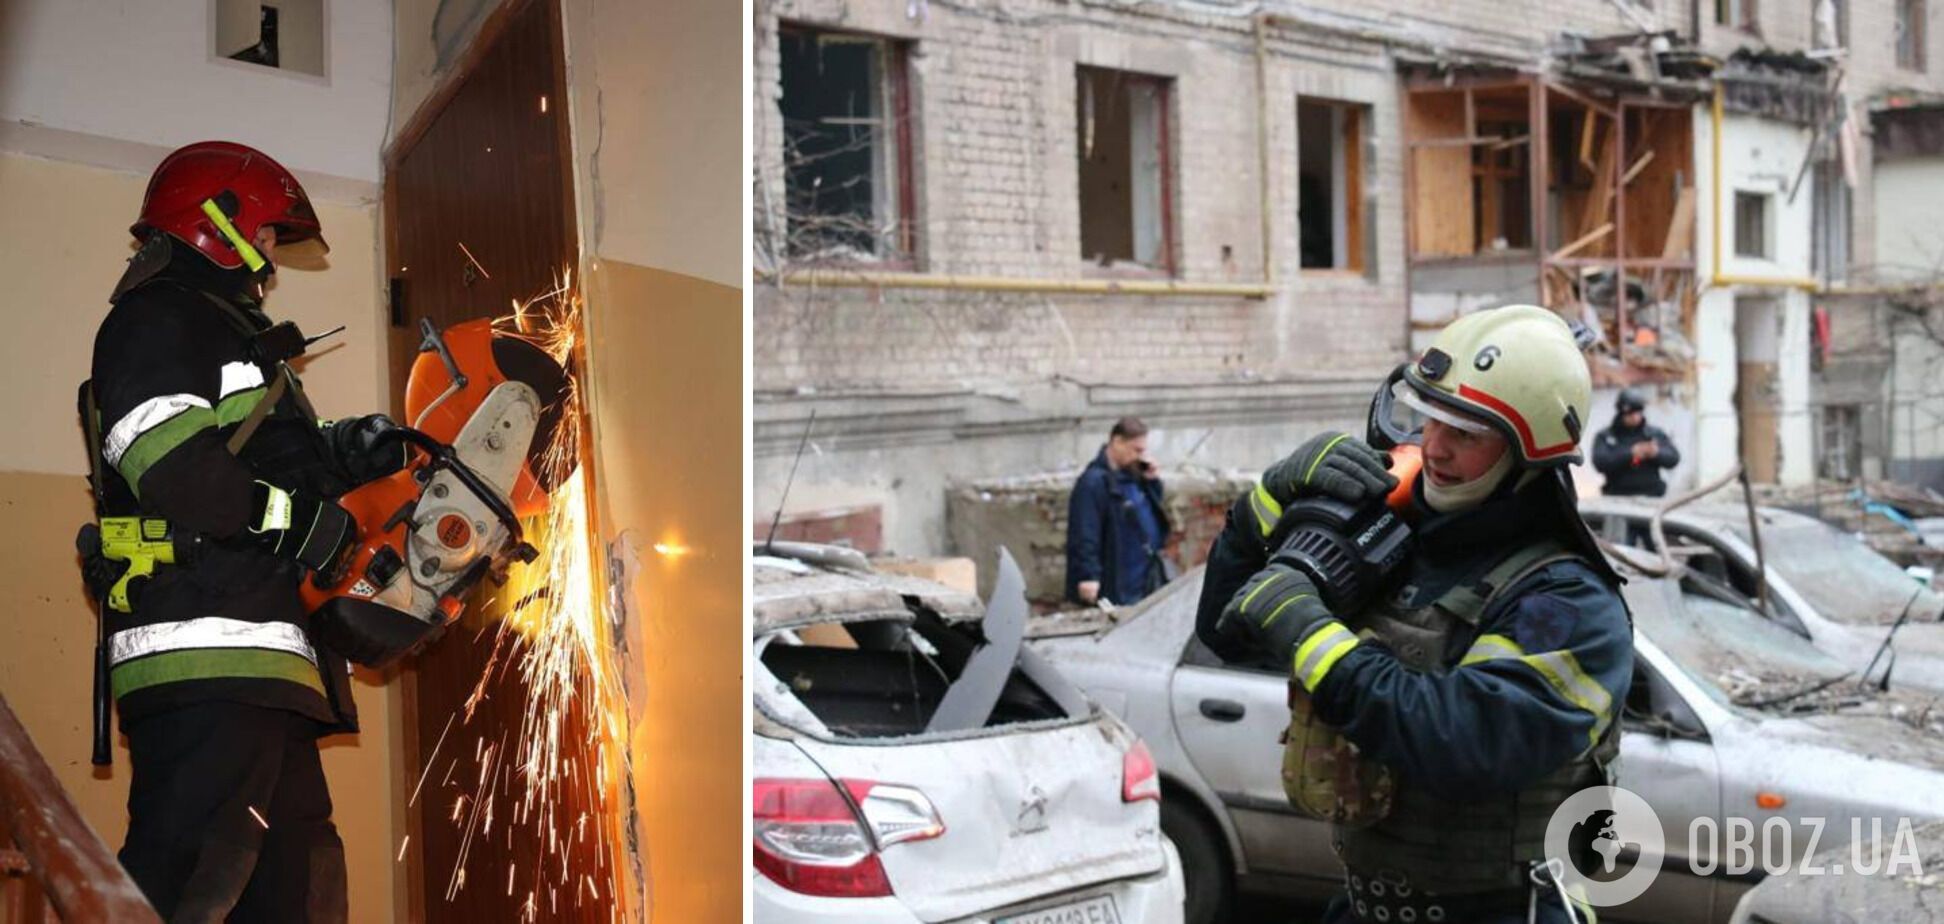 Росія завдала масованого удару по Україні, по Києву та Харкову летіли "Кинджали": є руйнування і загиблі, десятки людей постраждали. Фото й відео